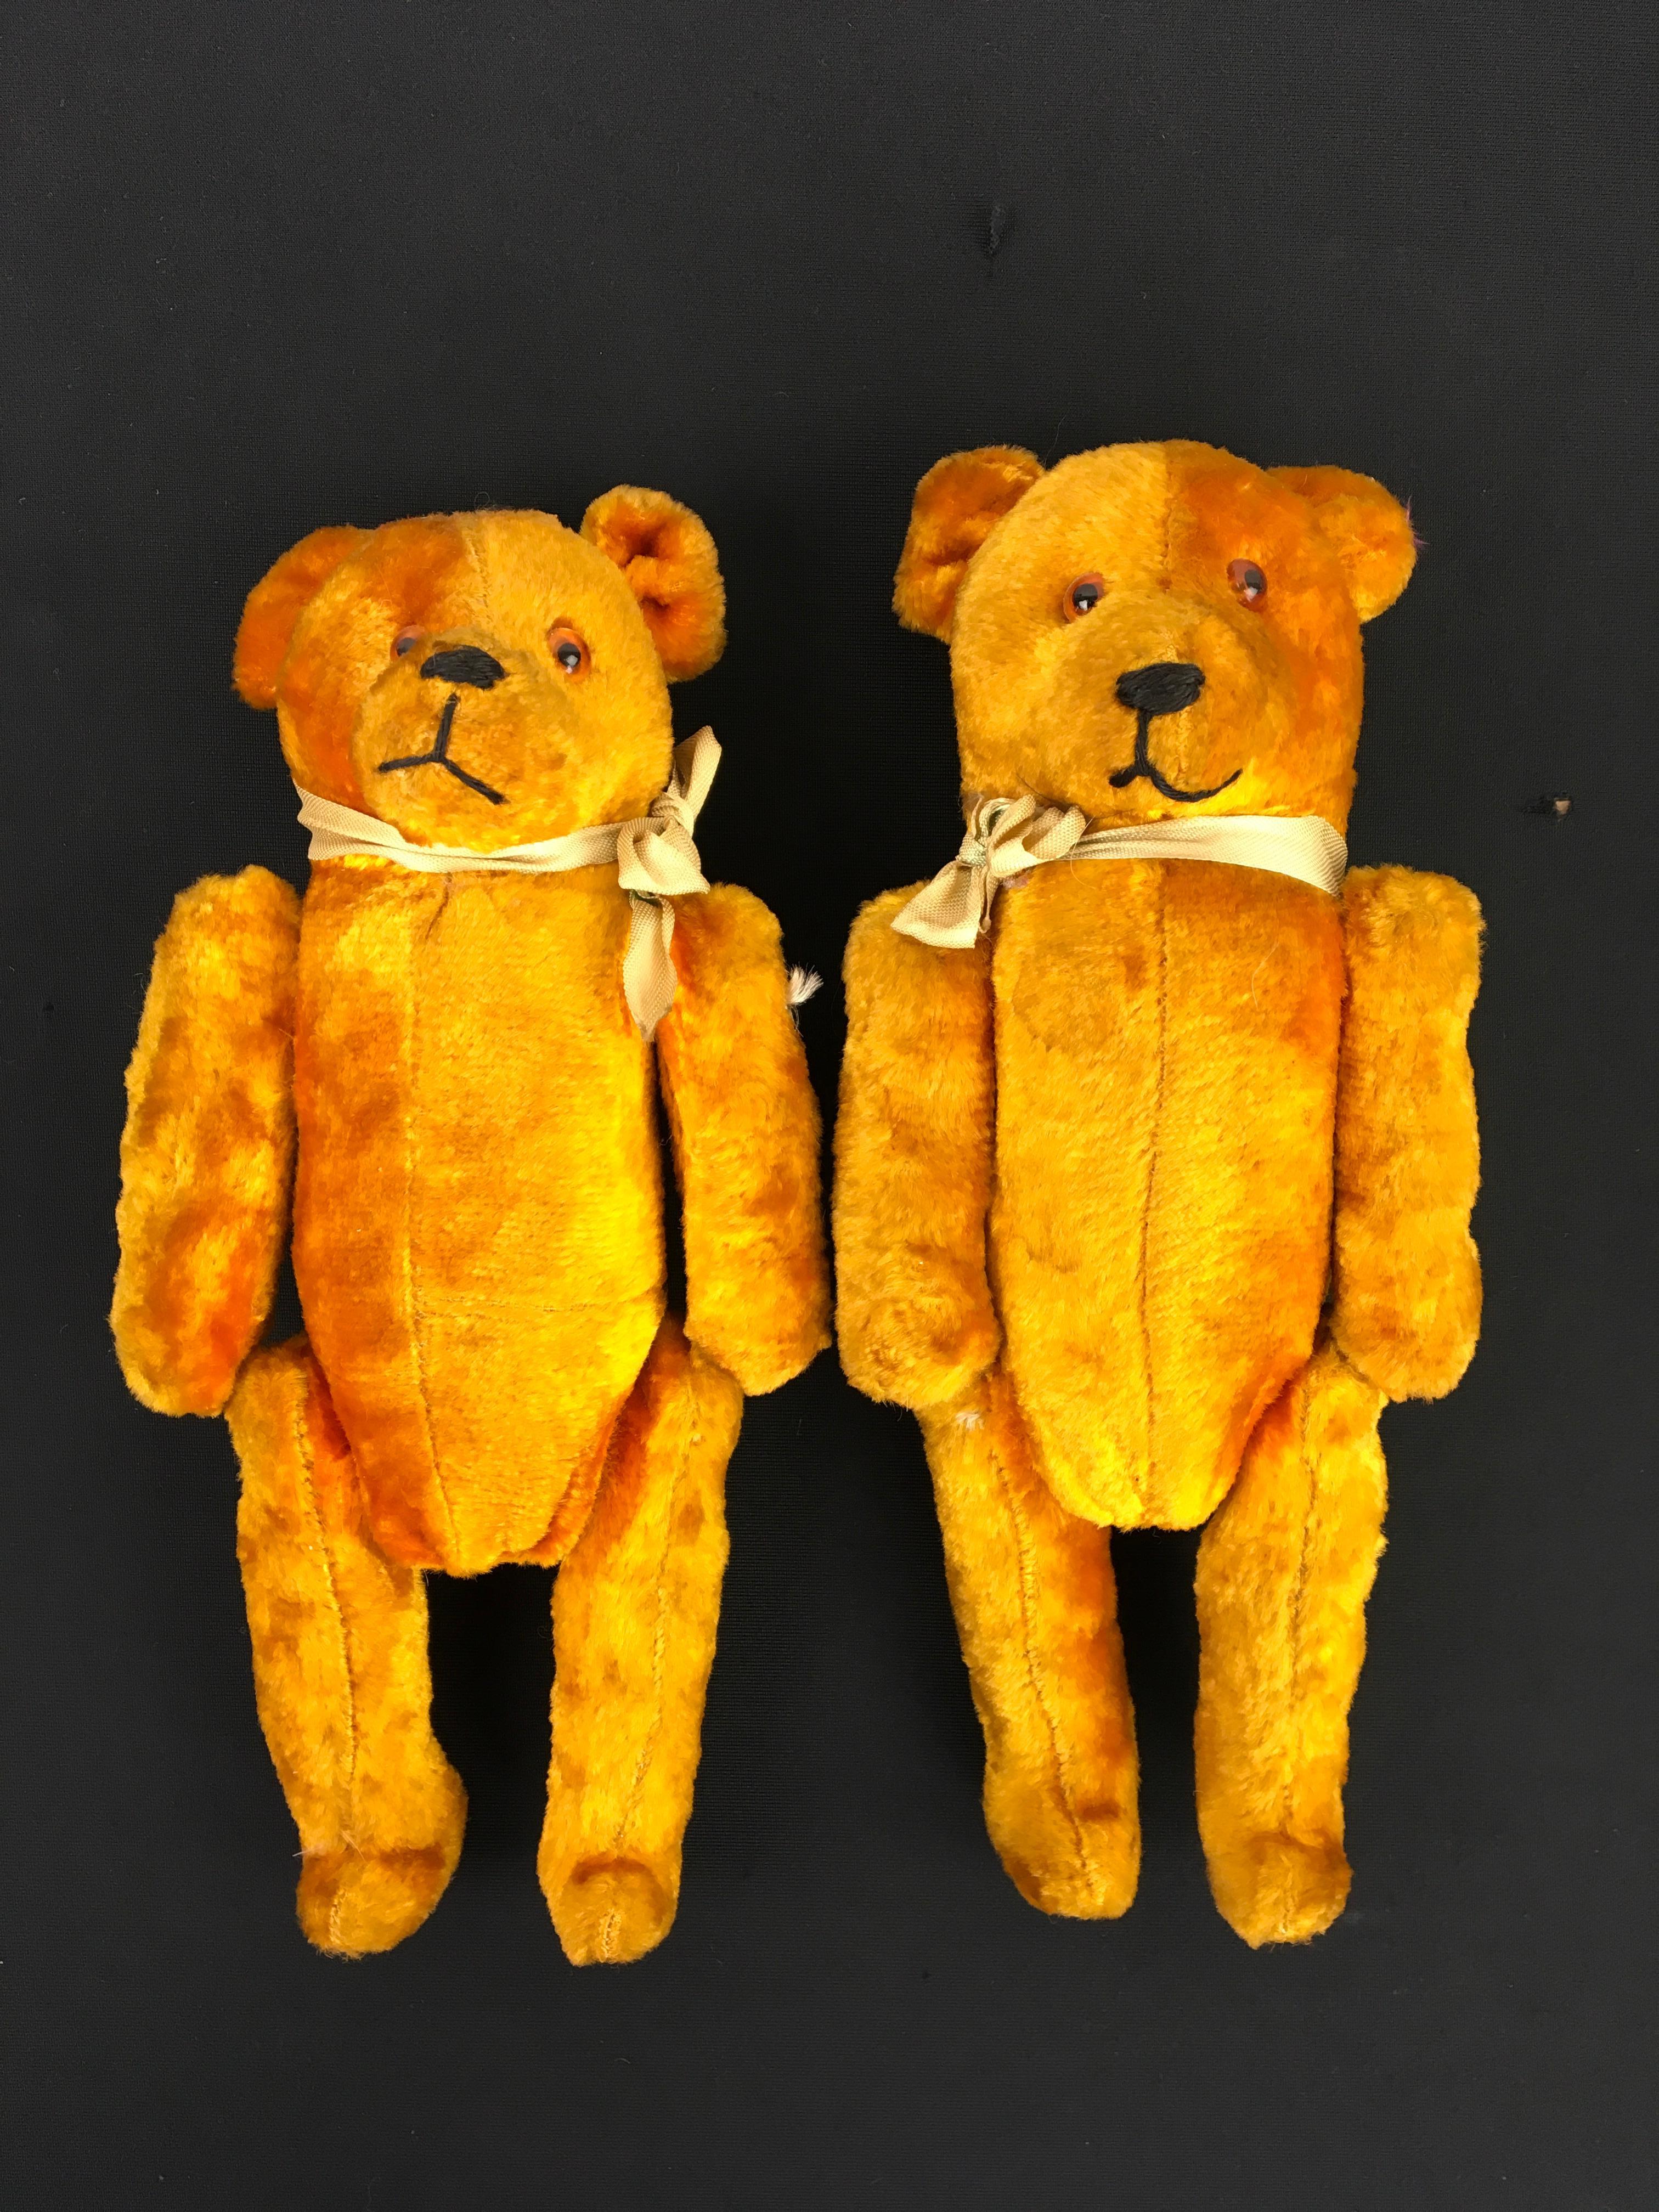 Paar antike Samtbären. 
Gold - braun - gelbe Samtbären mit Glasaugen und Stroh ausgestopft. 
Mit angenähtem Mund und Nase und beweglichen Armen und Beinen. 
Sieht aus wie ein Paar (Männchen und Weibchen), da die Köpfe unterschiedlich groß sind.